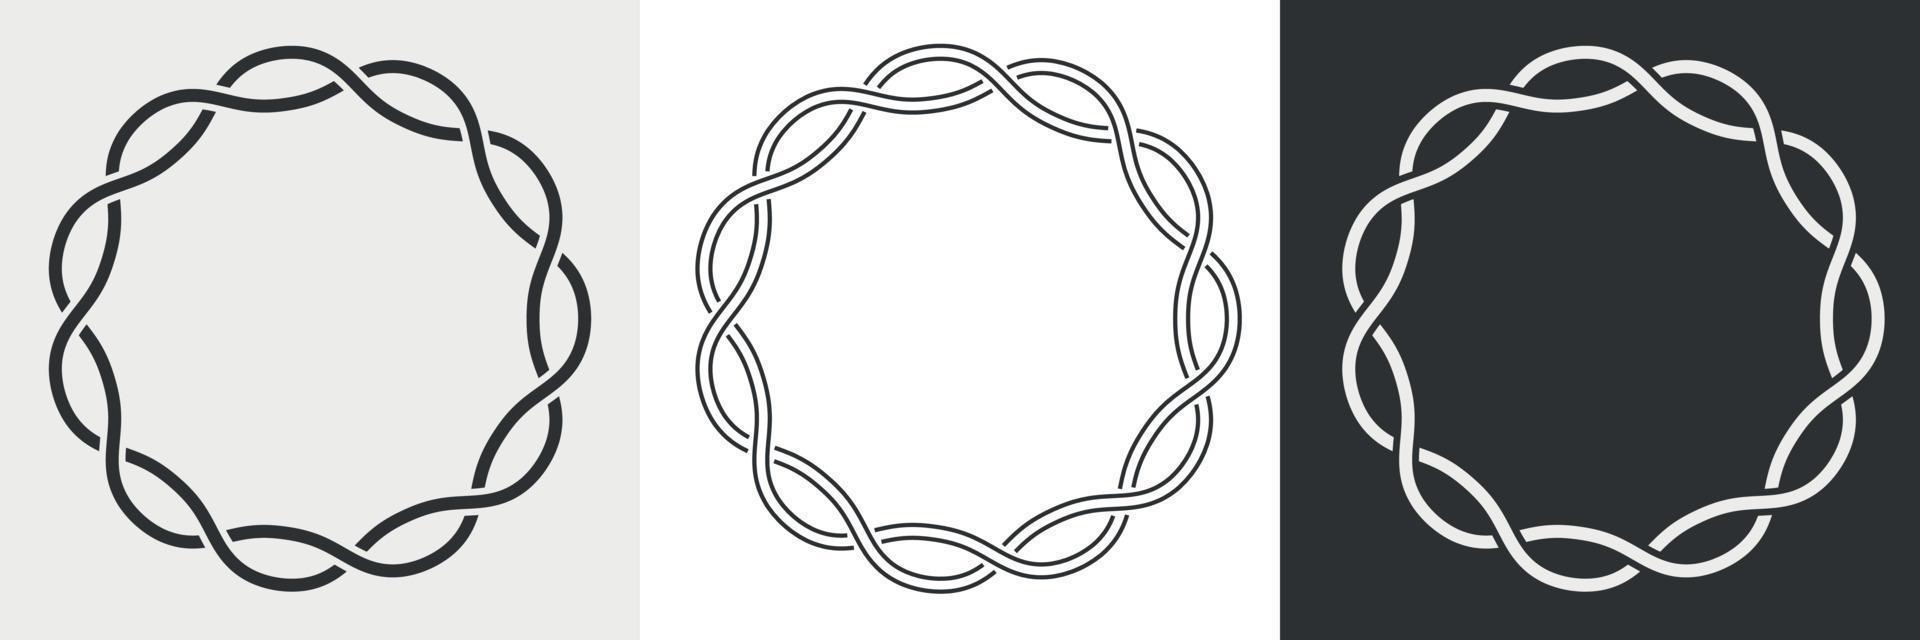 dekorative runde rahmen. satz von kreisrandschnursilhouette, strichzeichnungen und inversion. Logo der Symmetriekette. Vektor-Illustration vektor